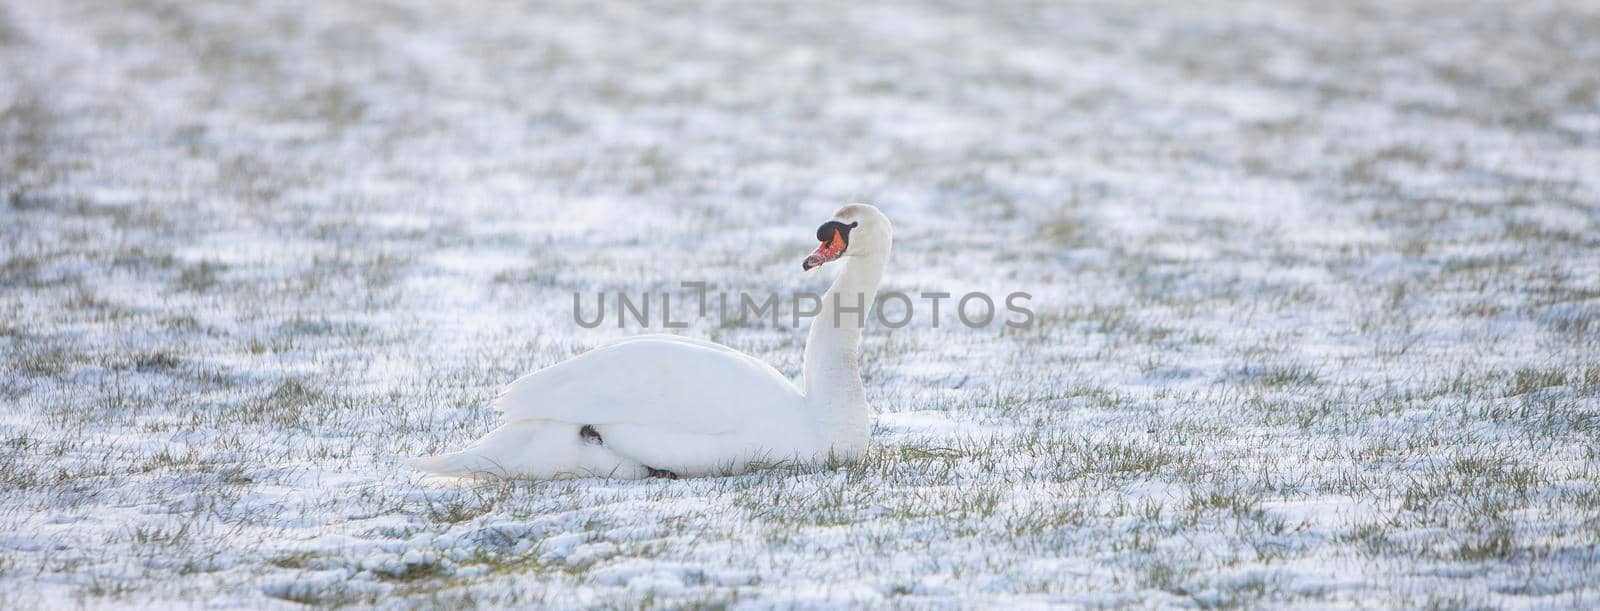 swan sits in snow covered grassy meadow by ahavelaar